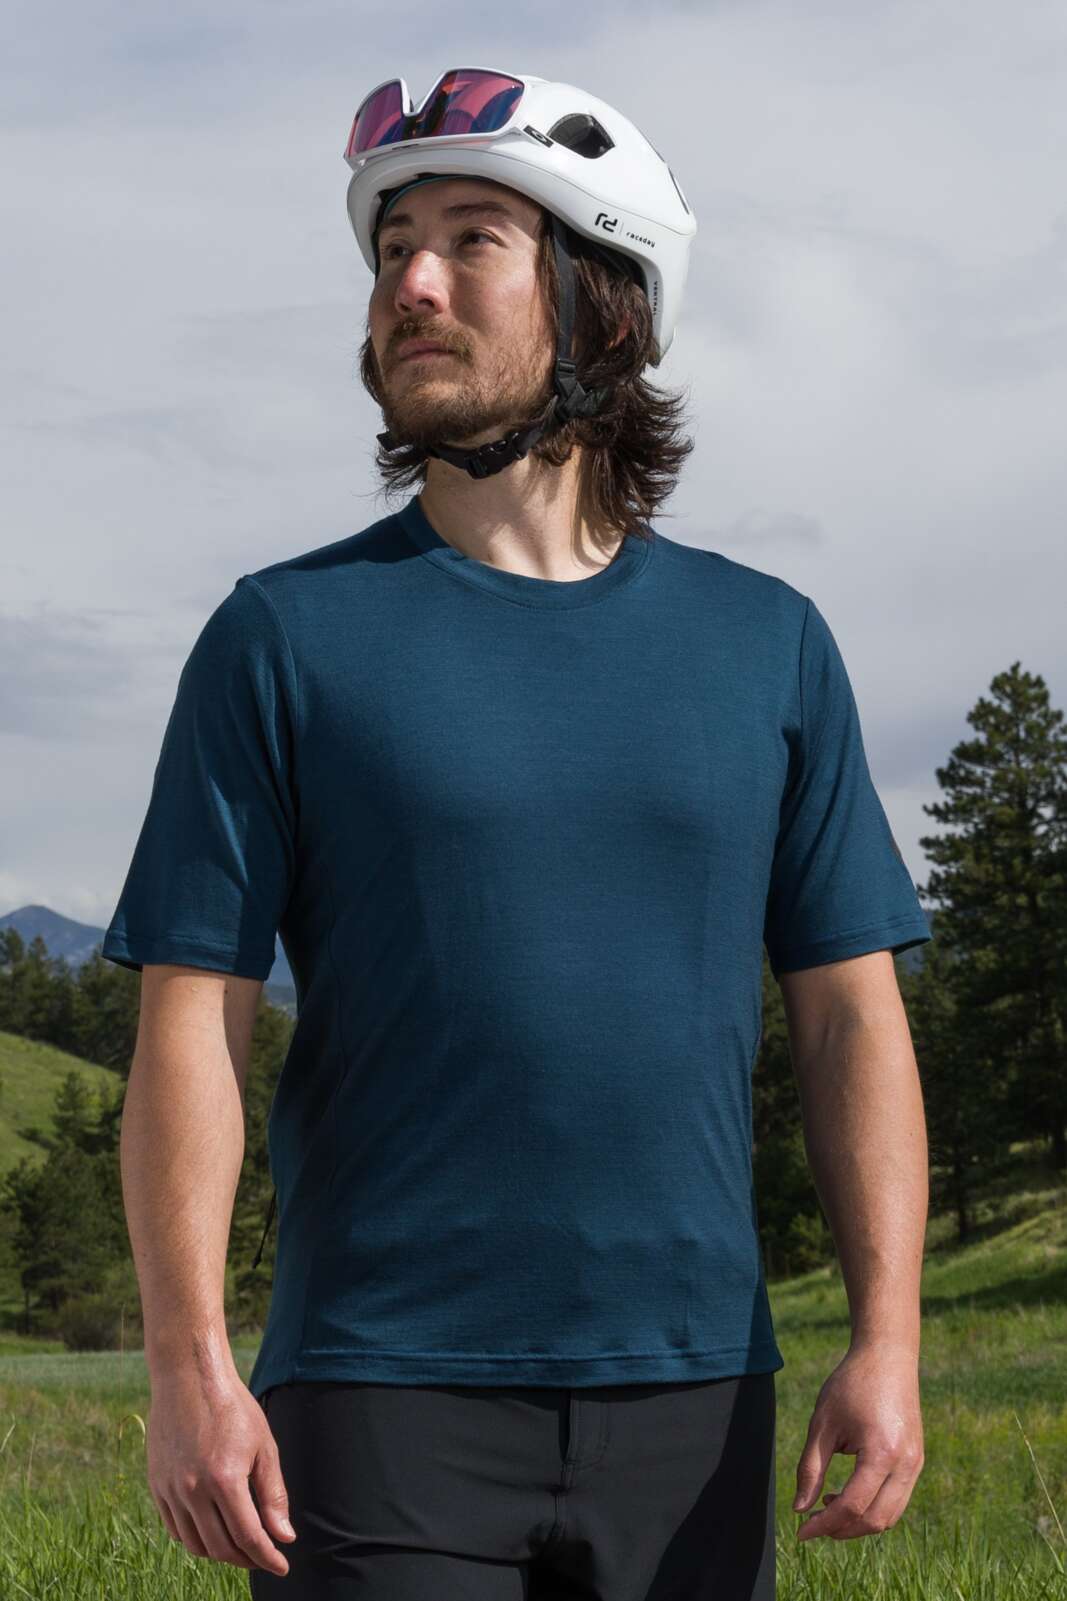 Men's Merino Wool Mountain Bike Shirt - Front View